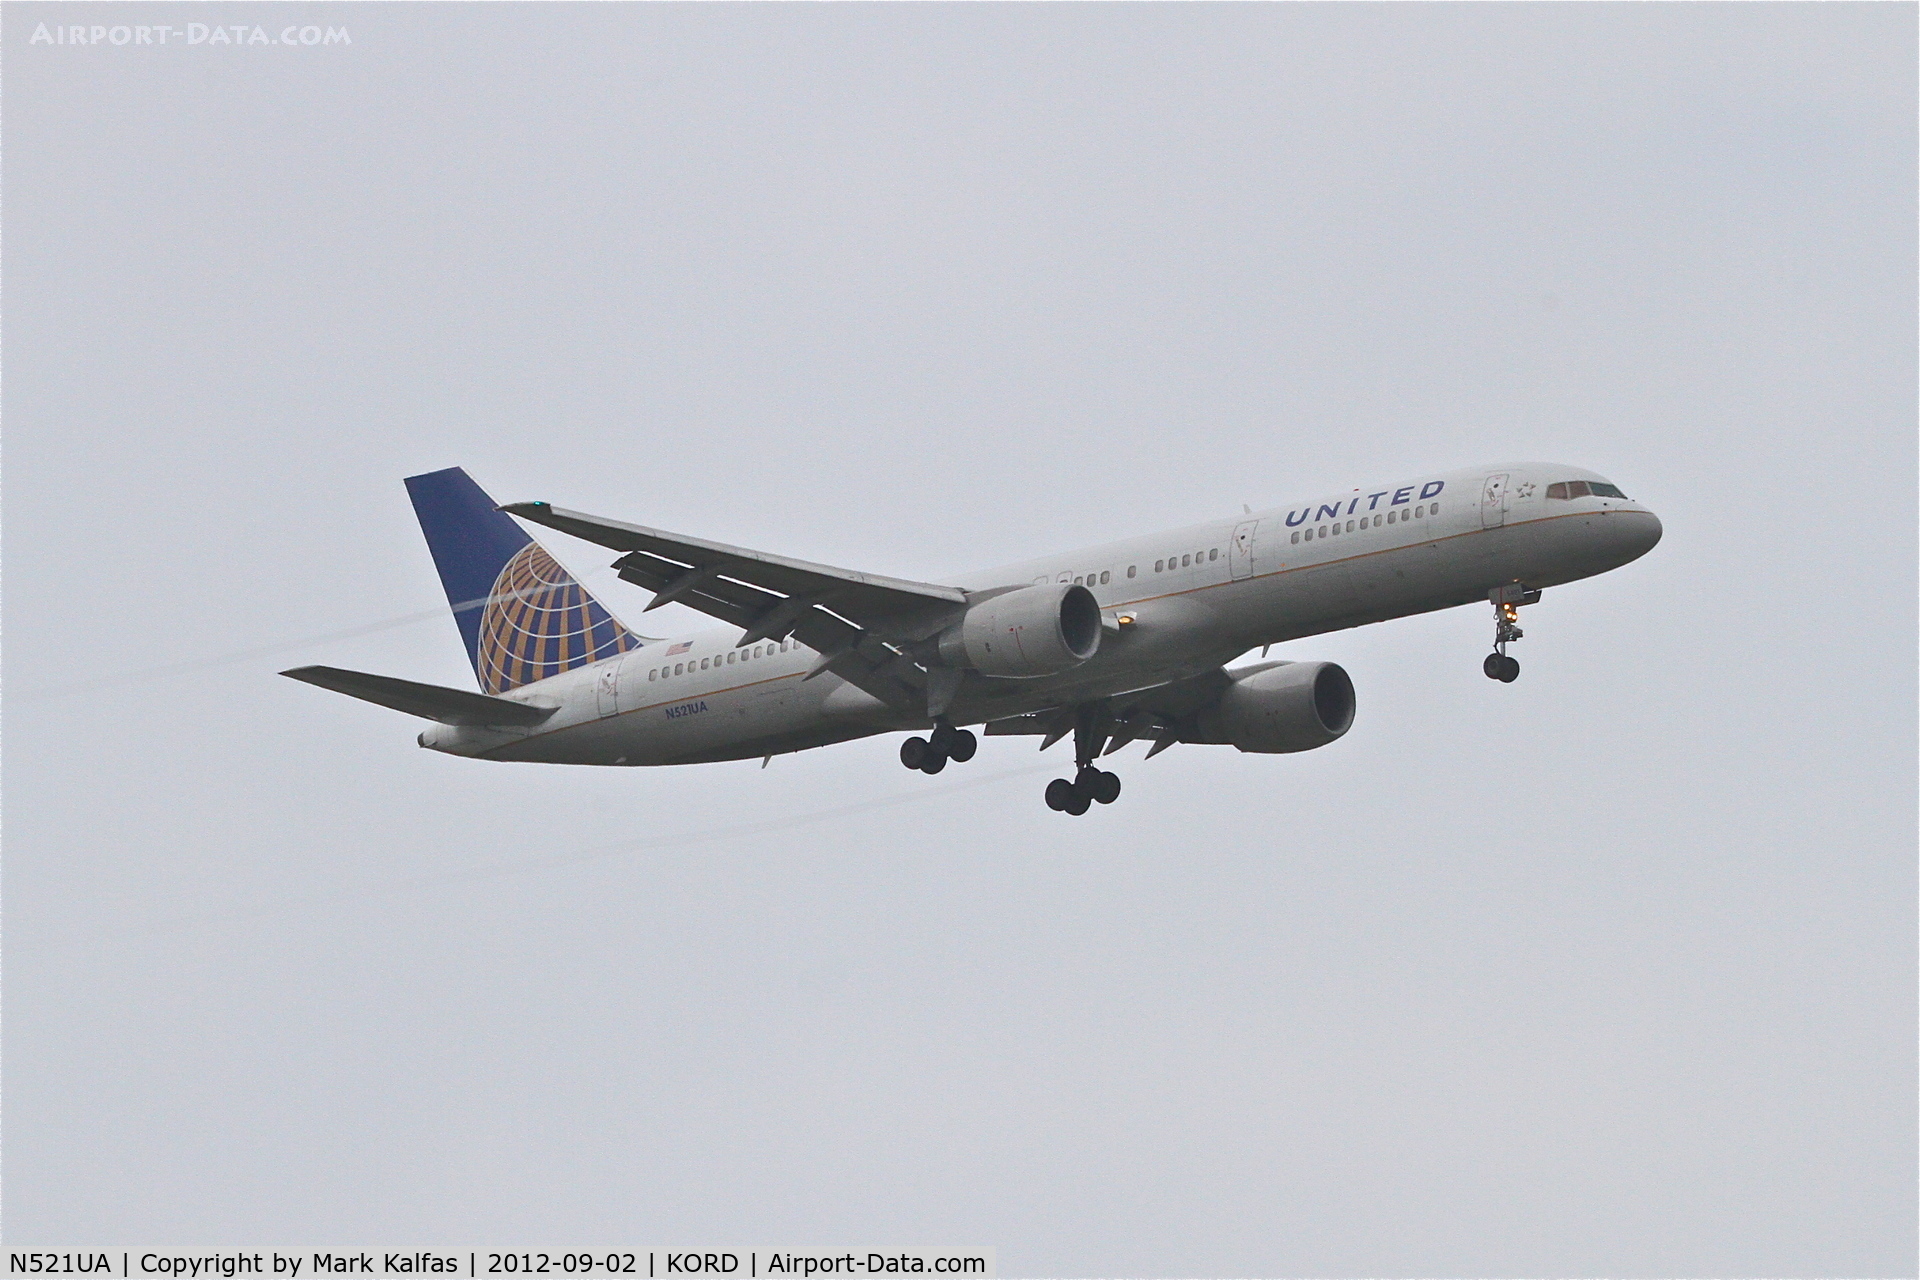 N521UA, 1990 Boeing 757-222 C/N 24891, United Airlines Boeing 757-222, UAL338 arriving from KSEA, RWY 10 approach KORD.